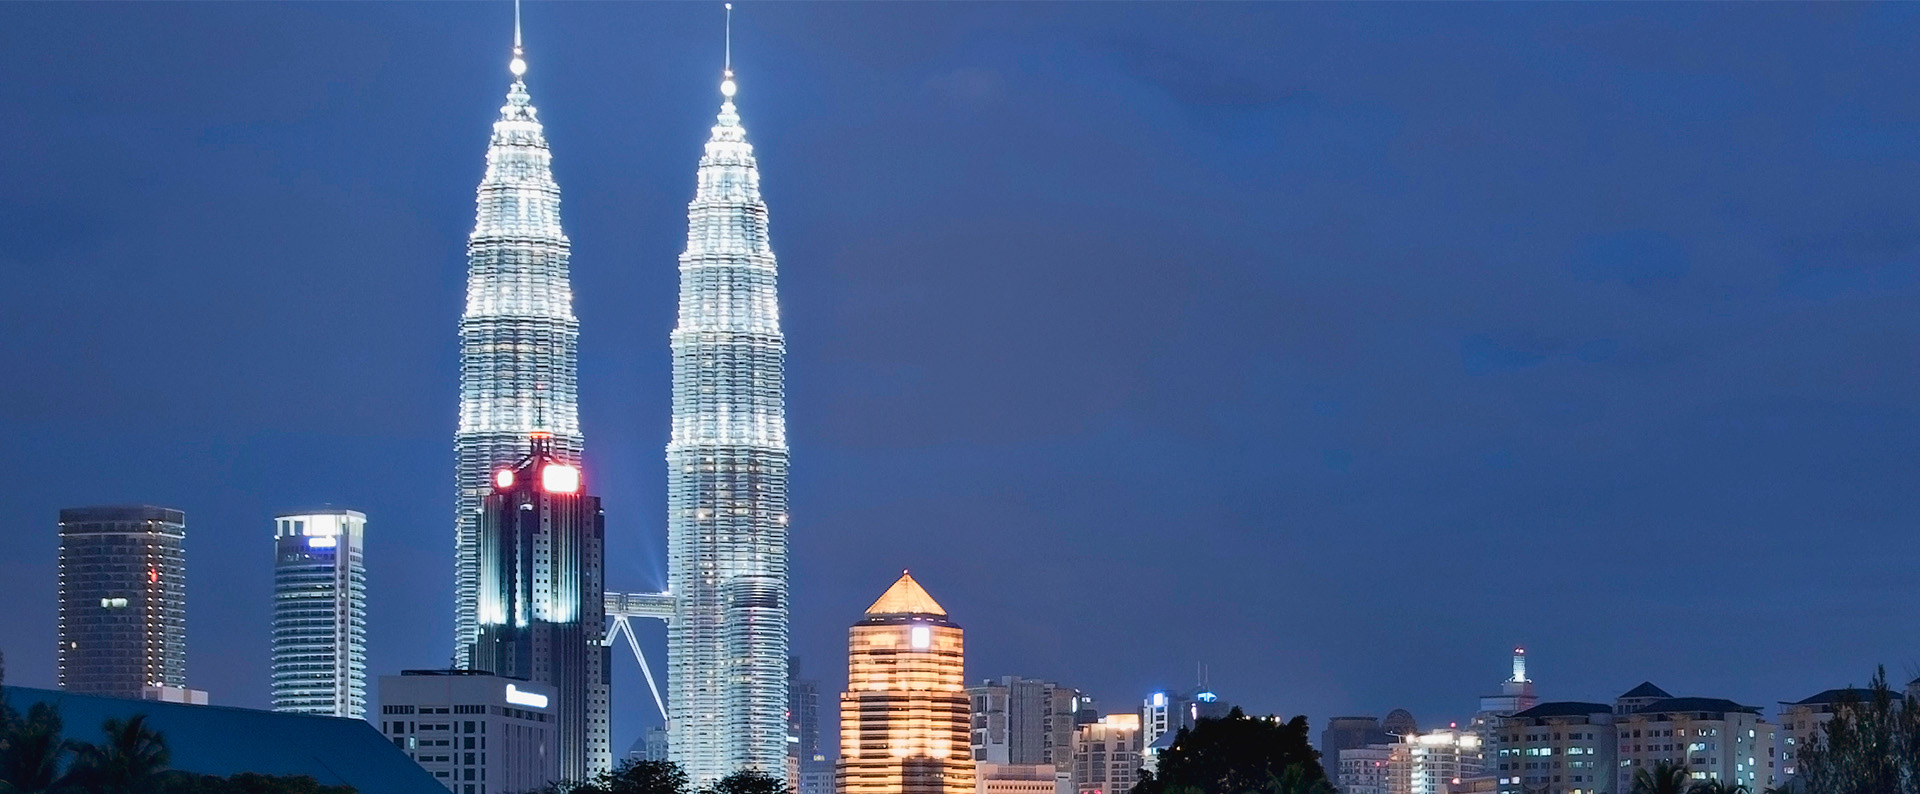 马来西亚吉隆坡国家 石油双子塔